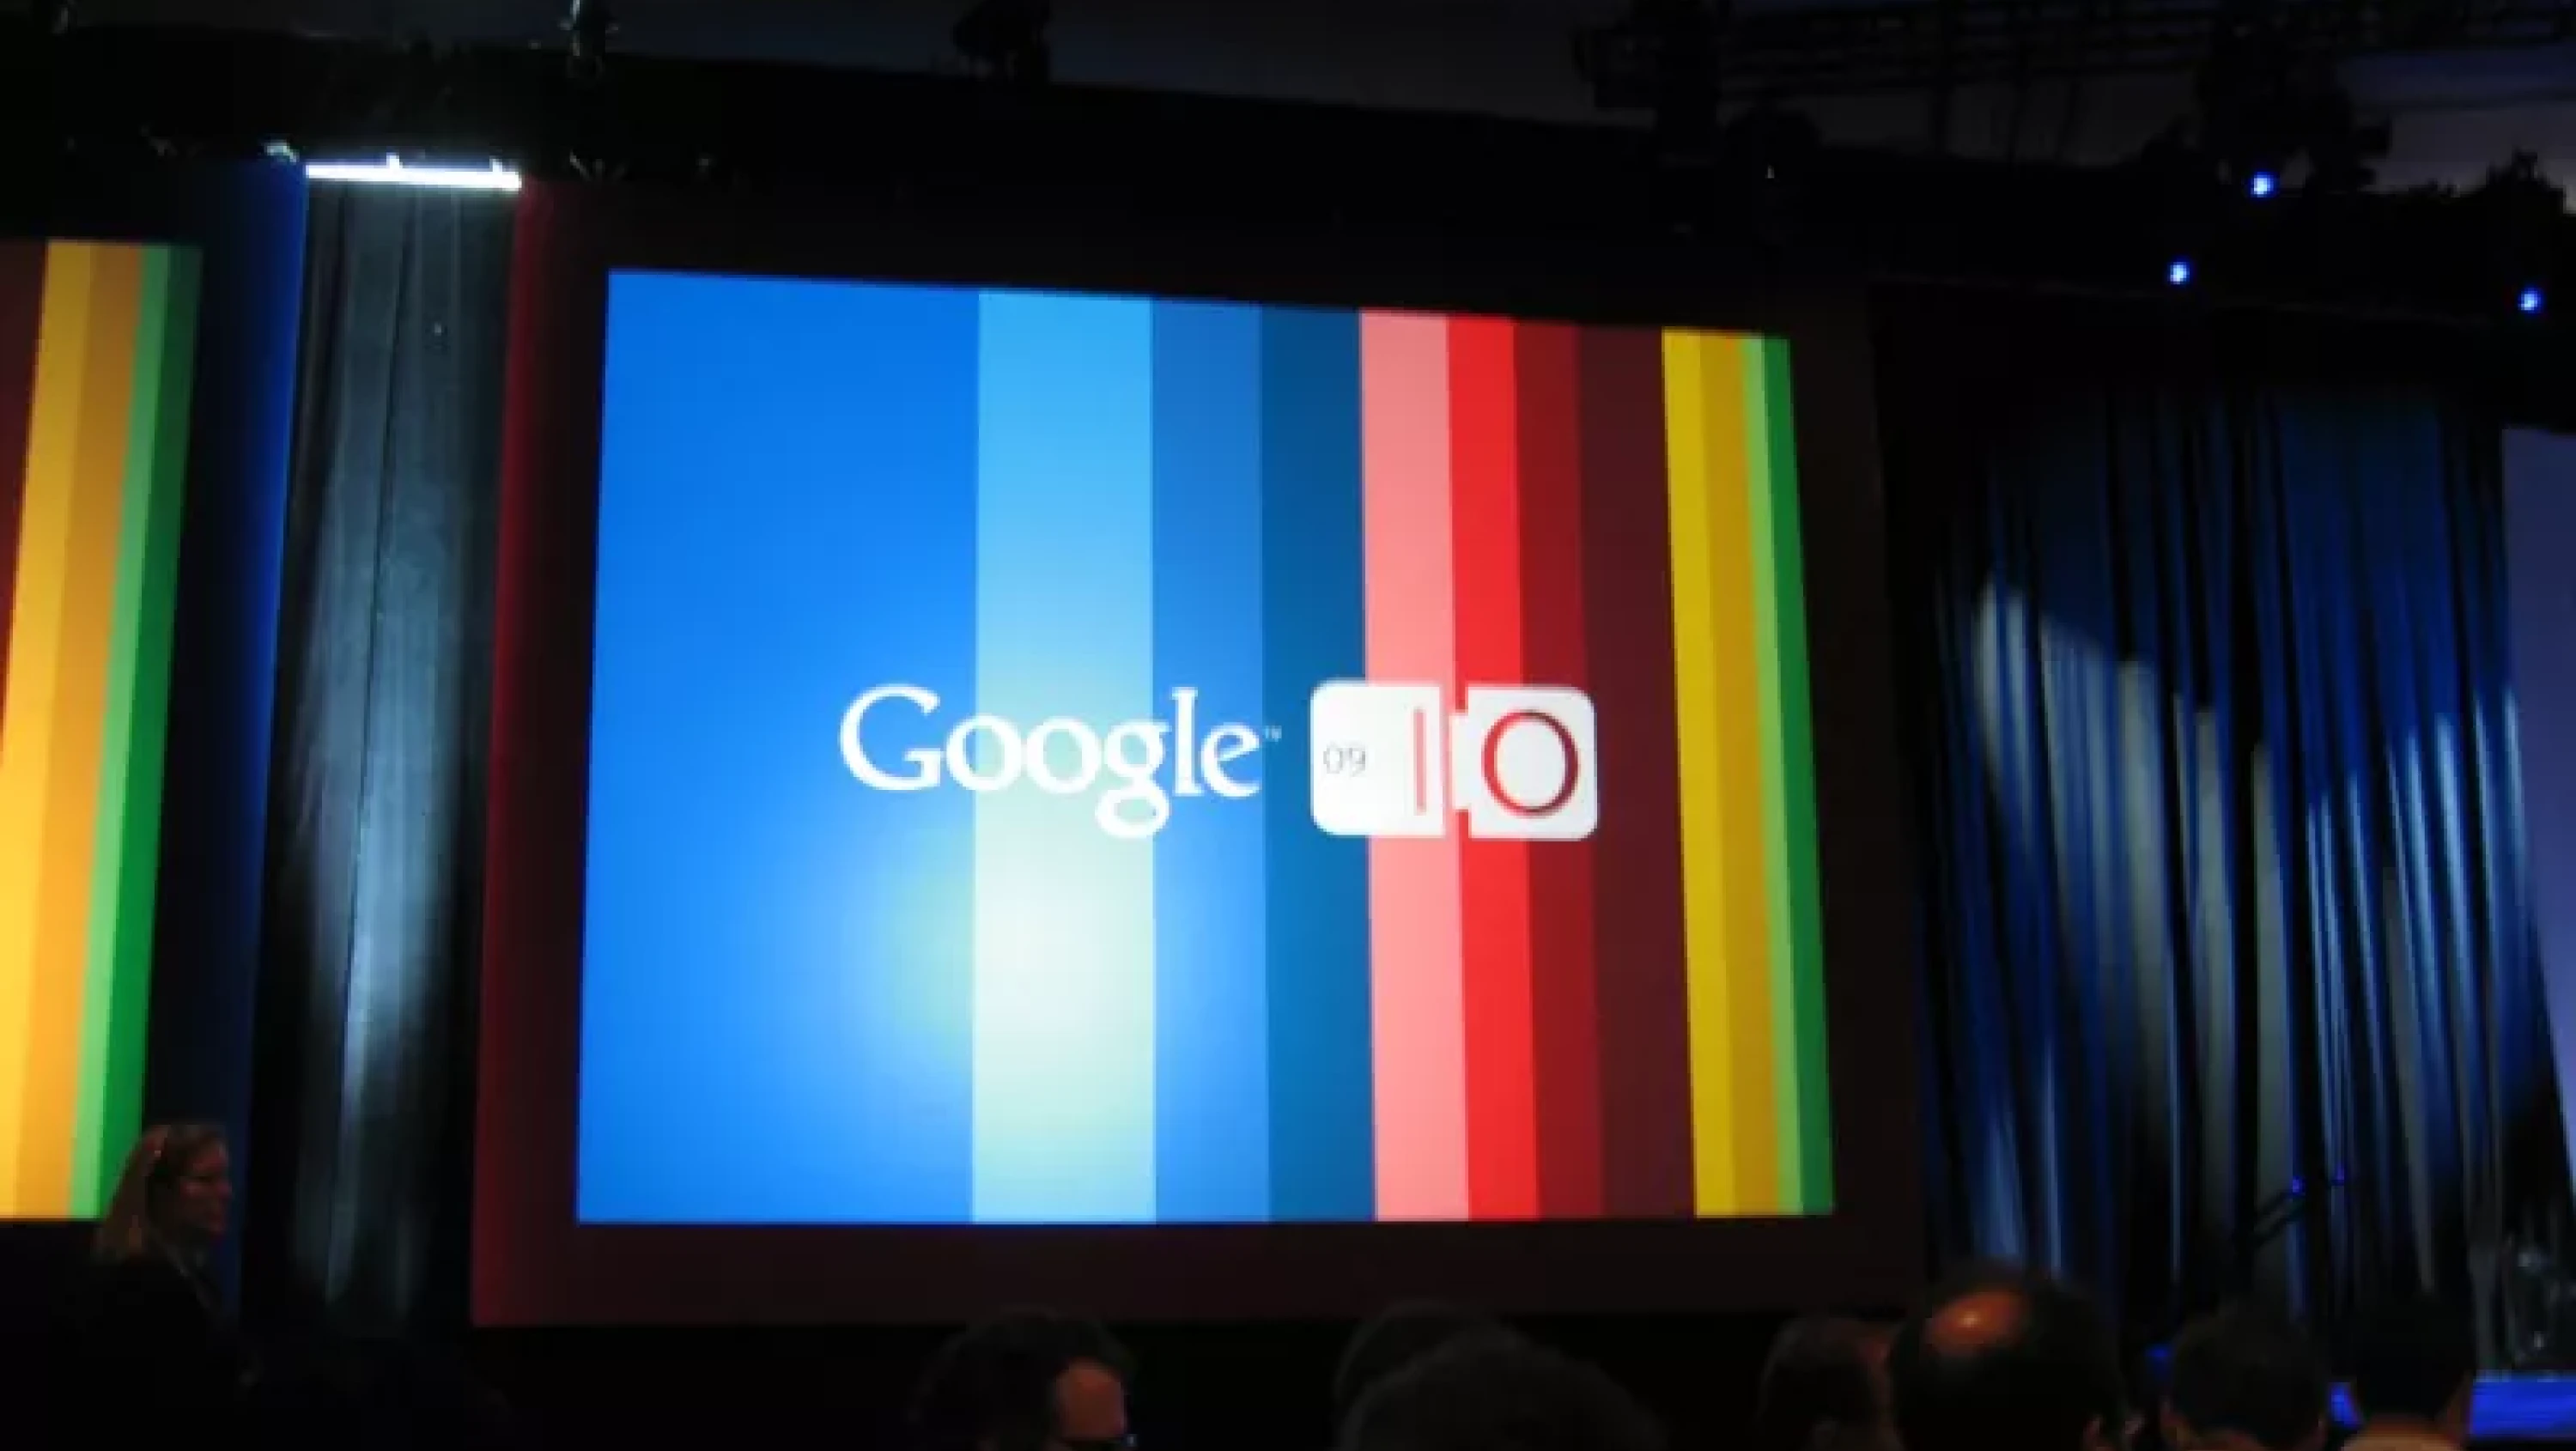 Ready for Google I/O 2009